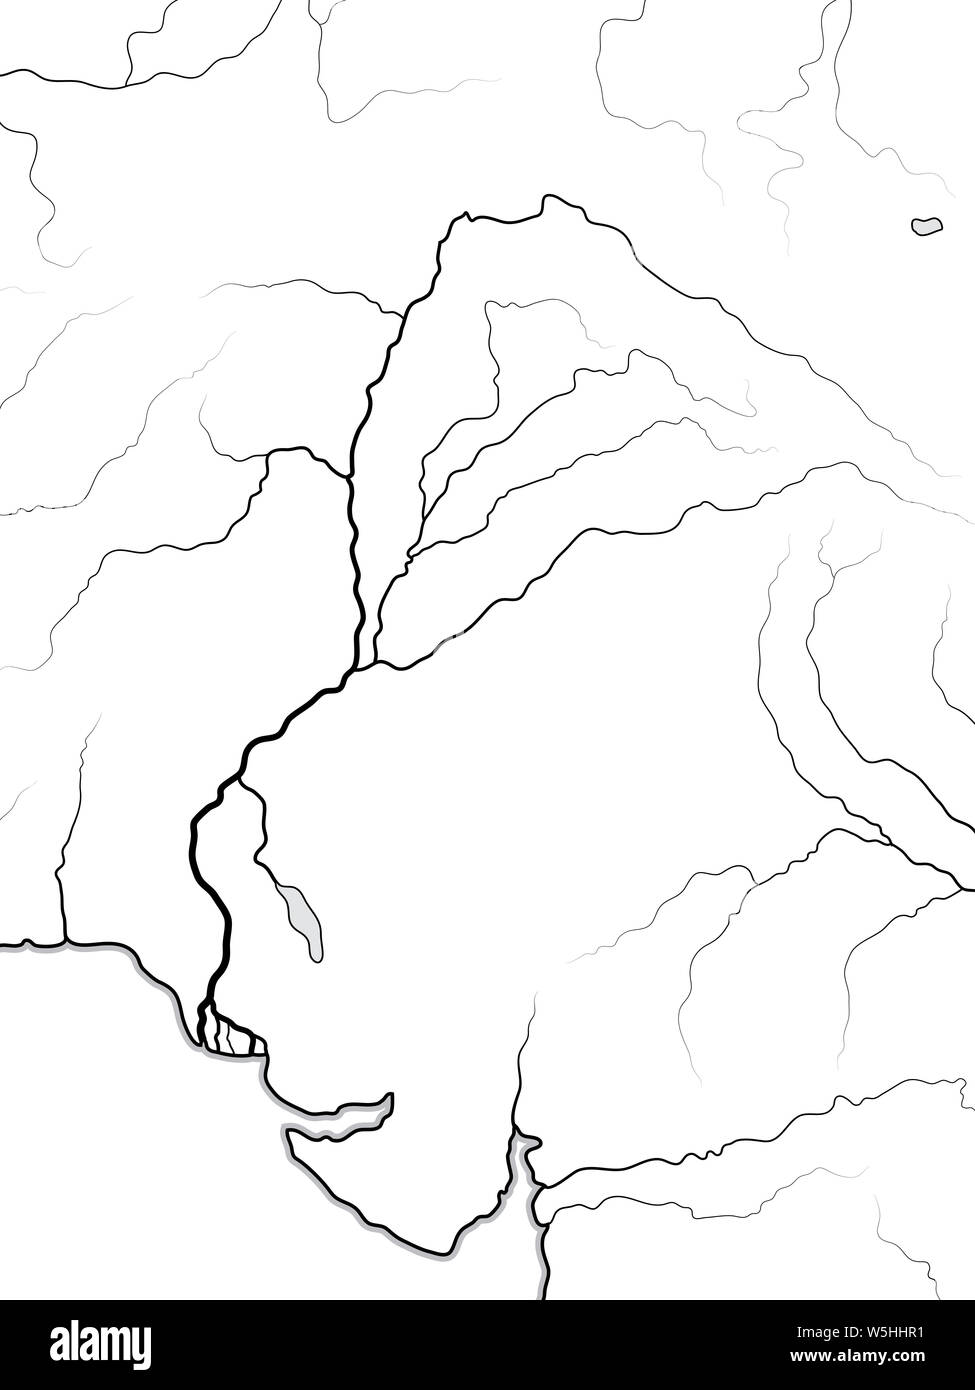 Mapa mundial de El Valle del Río Indo: India, Pakistán, Hindustan, Pashtunistan, Punjab (cinco ríos sagrados), Cachemira, Cachemire, en el sur de Asia. Geochart. Foto de stock